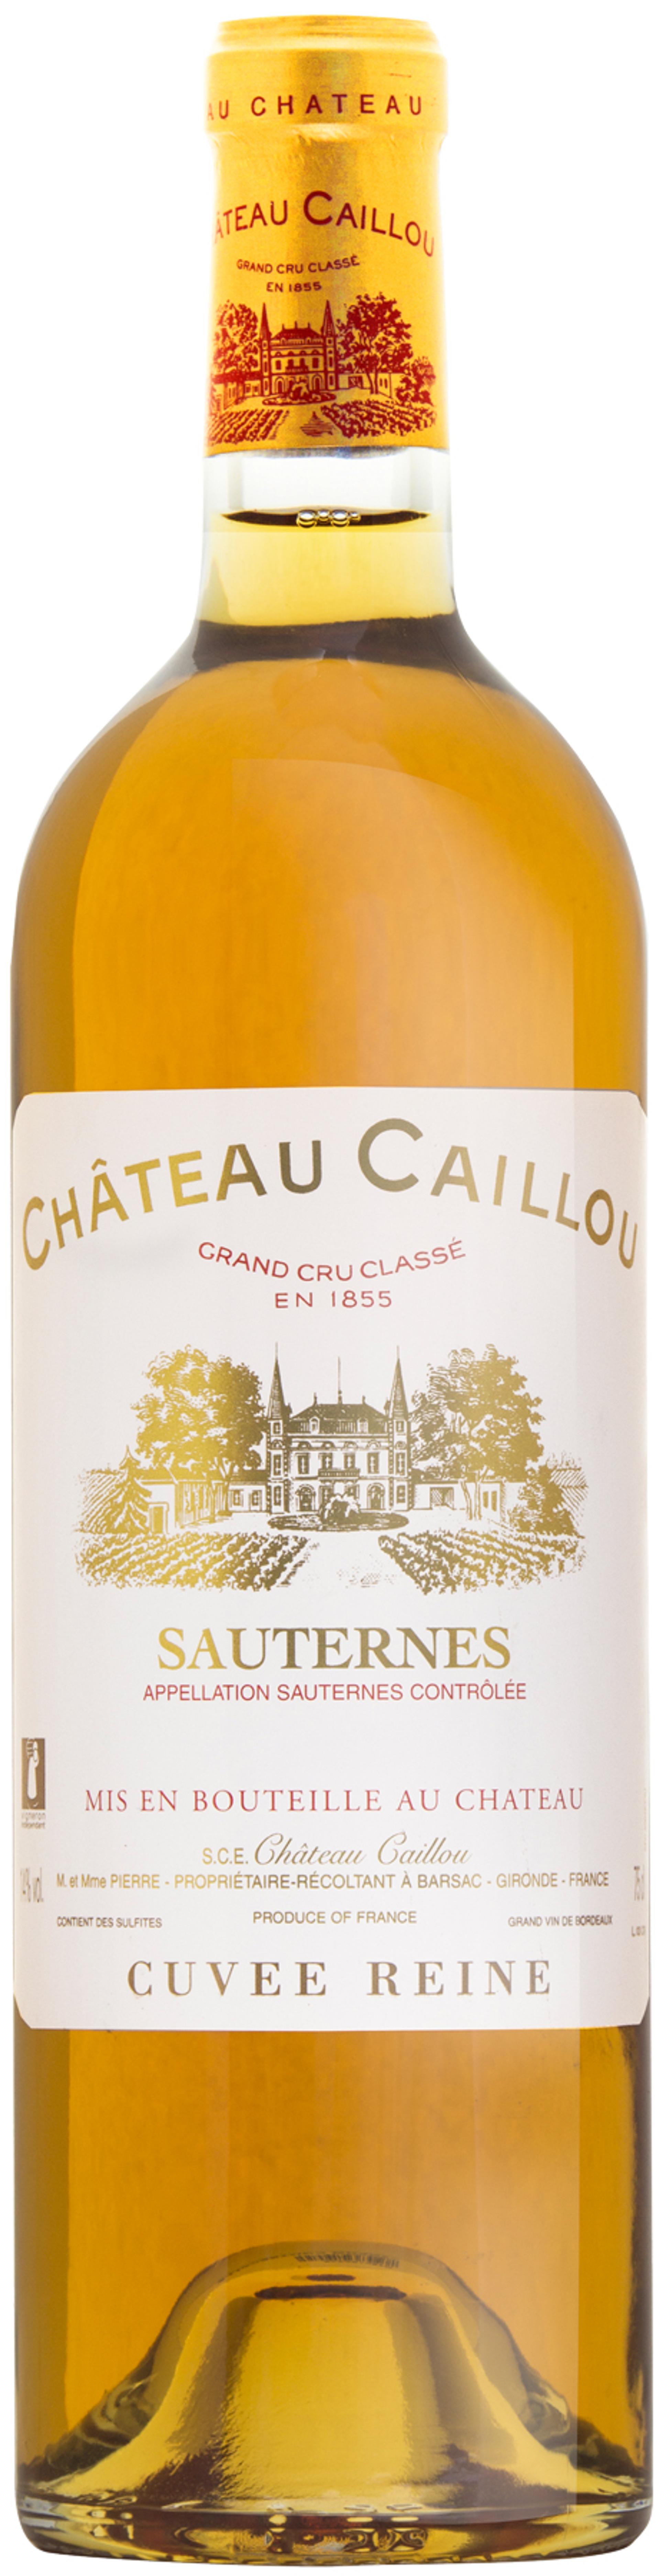 Château Caillou "Cuvée Reine"